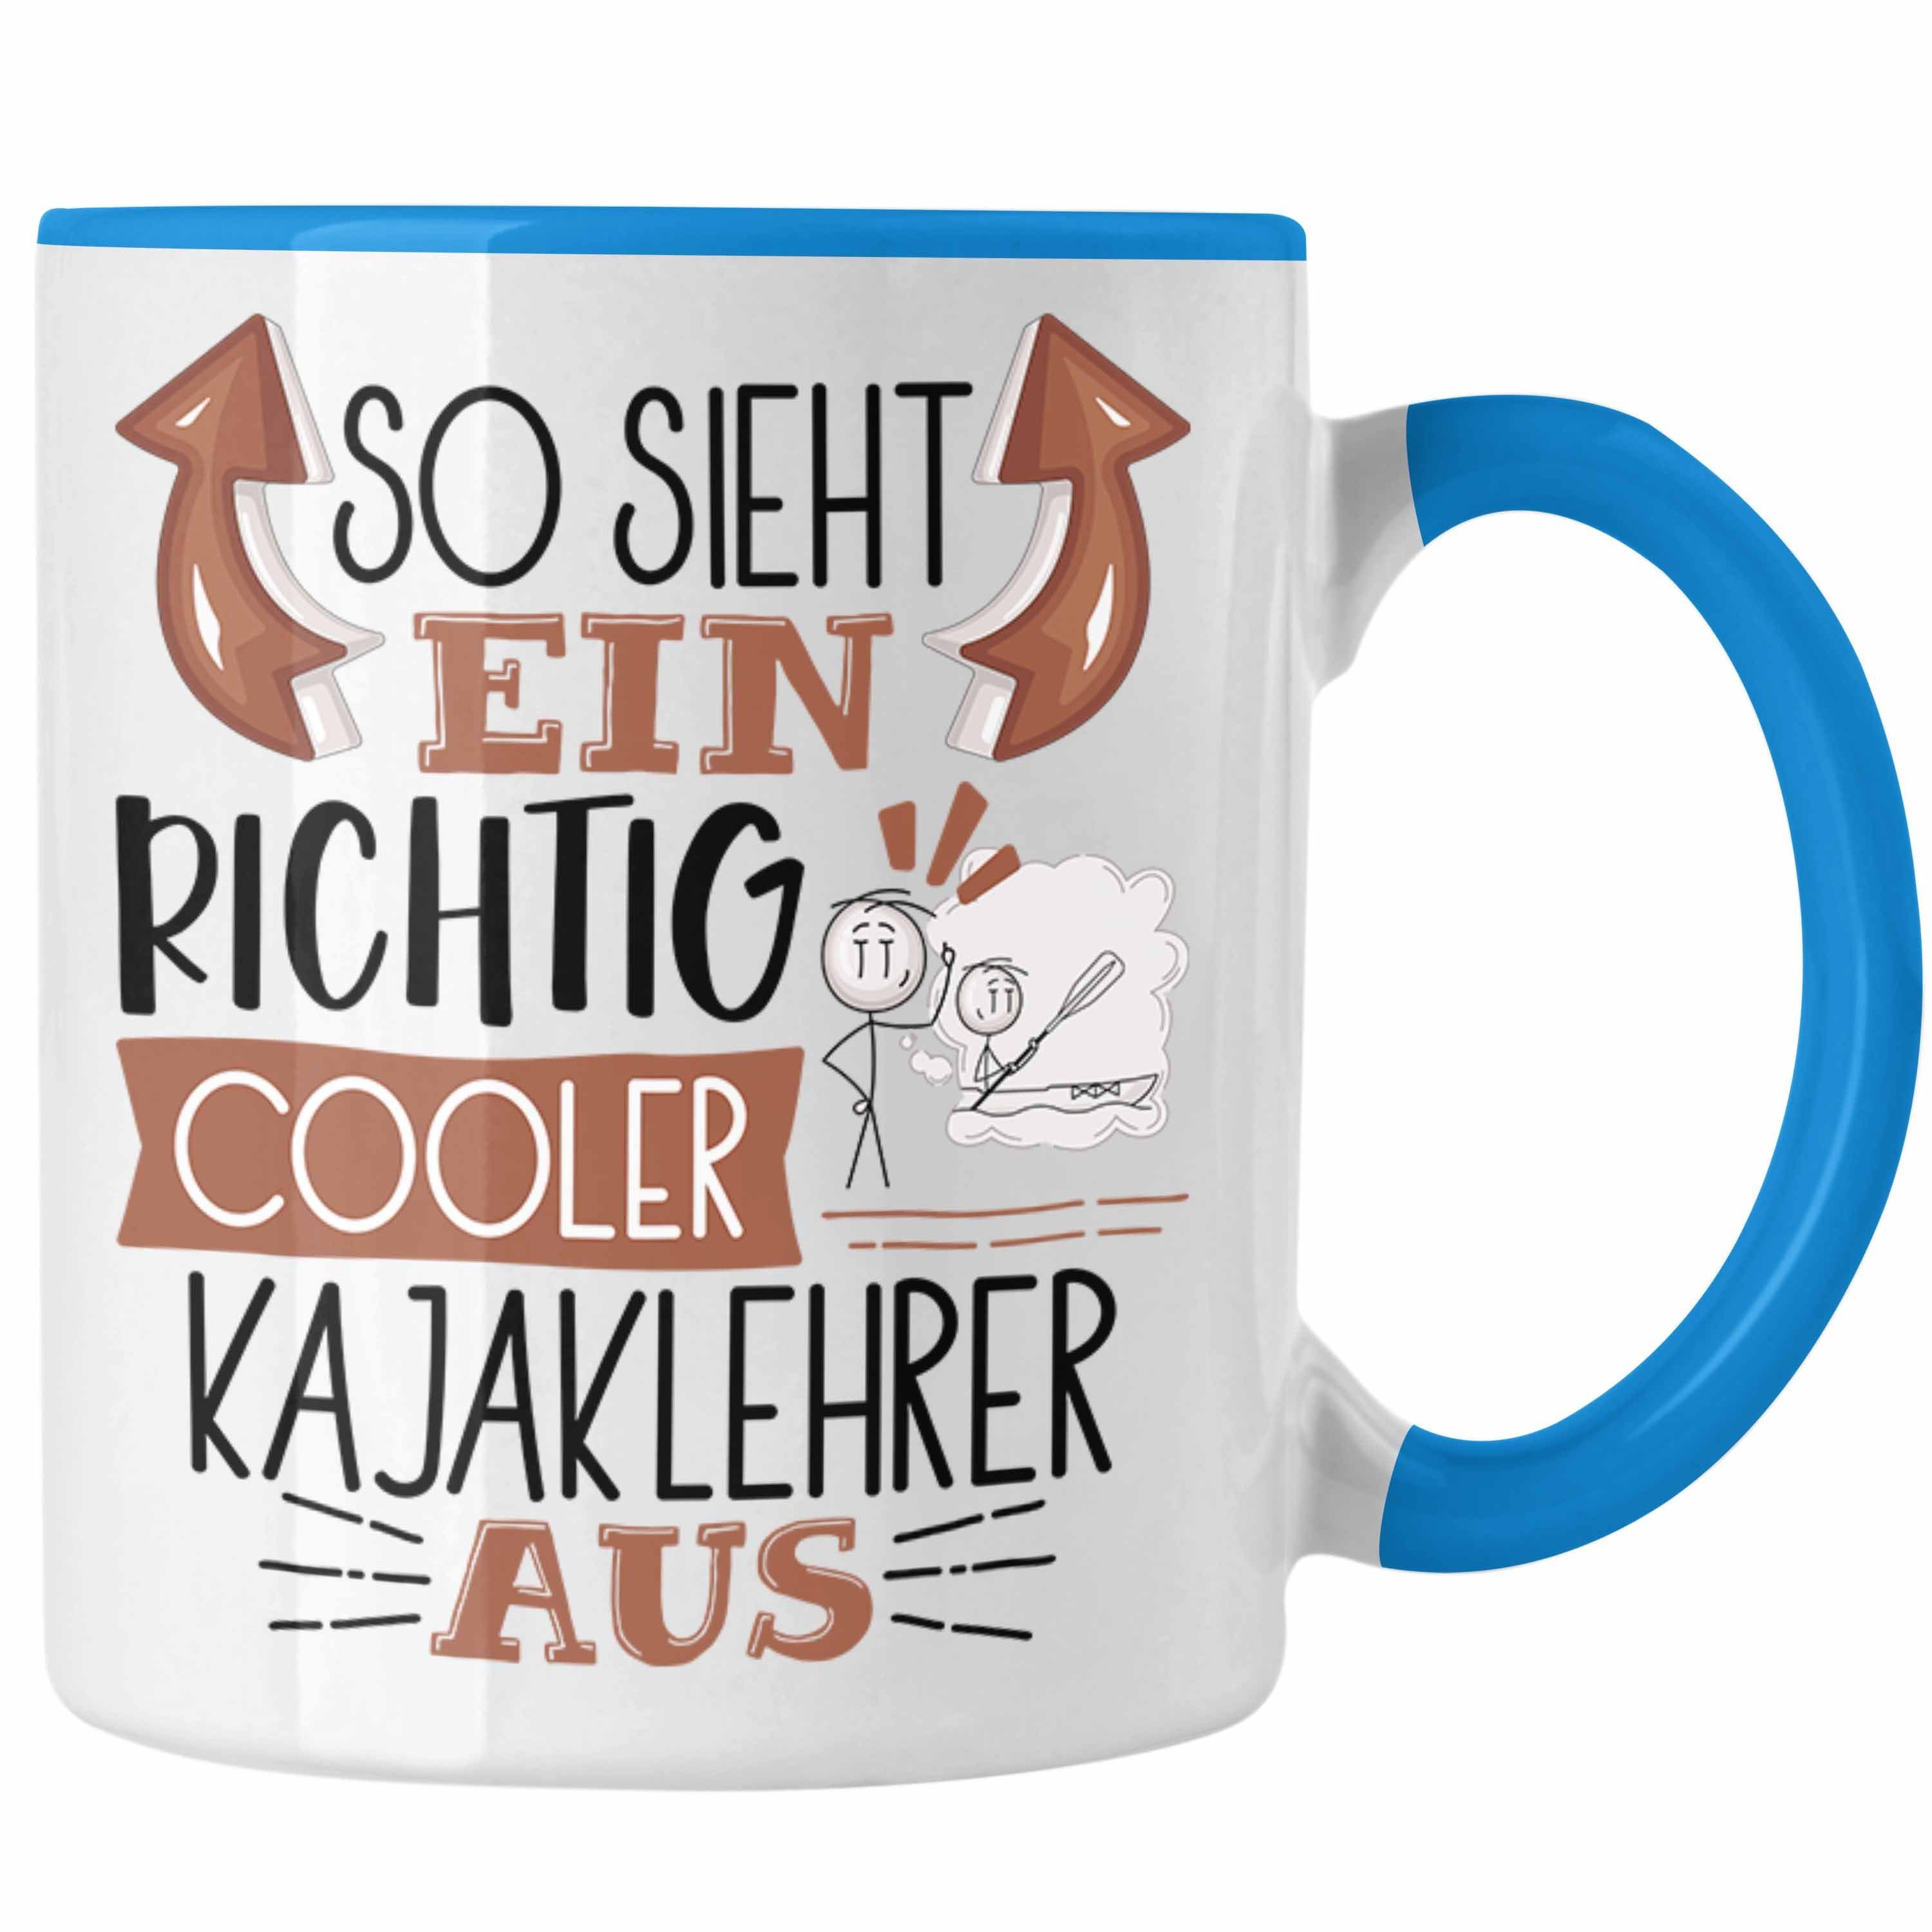 Richtig Tasse Geschenk Cooler So Tasse Ein Sieht Kajaklehrer für Aus Kajakle Blau Trendation